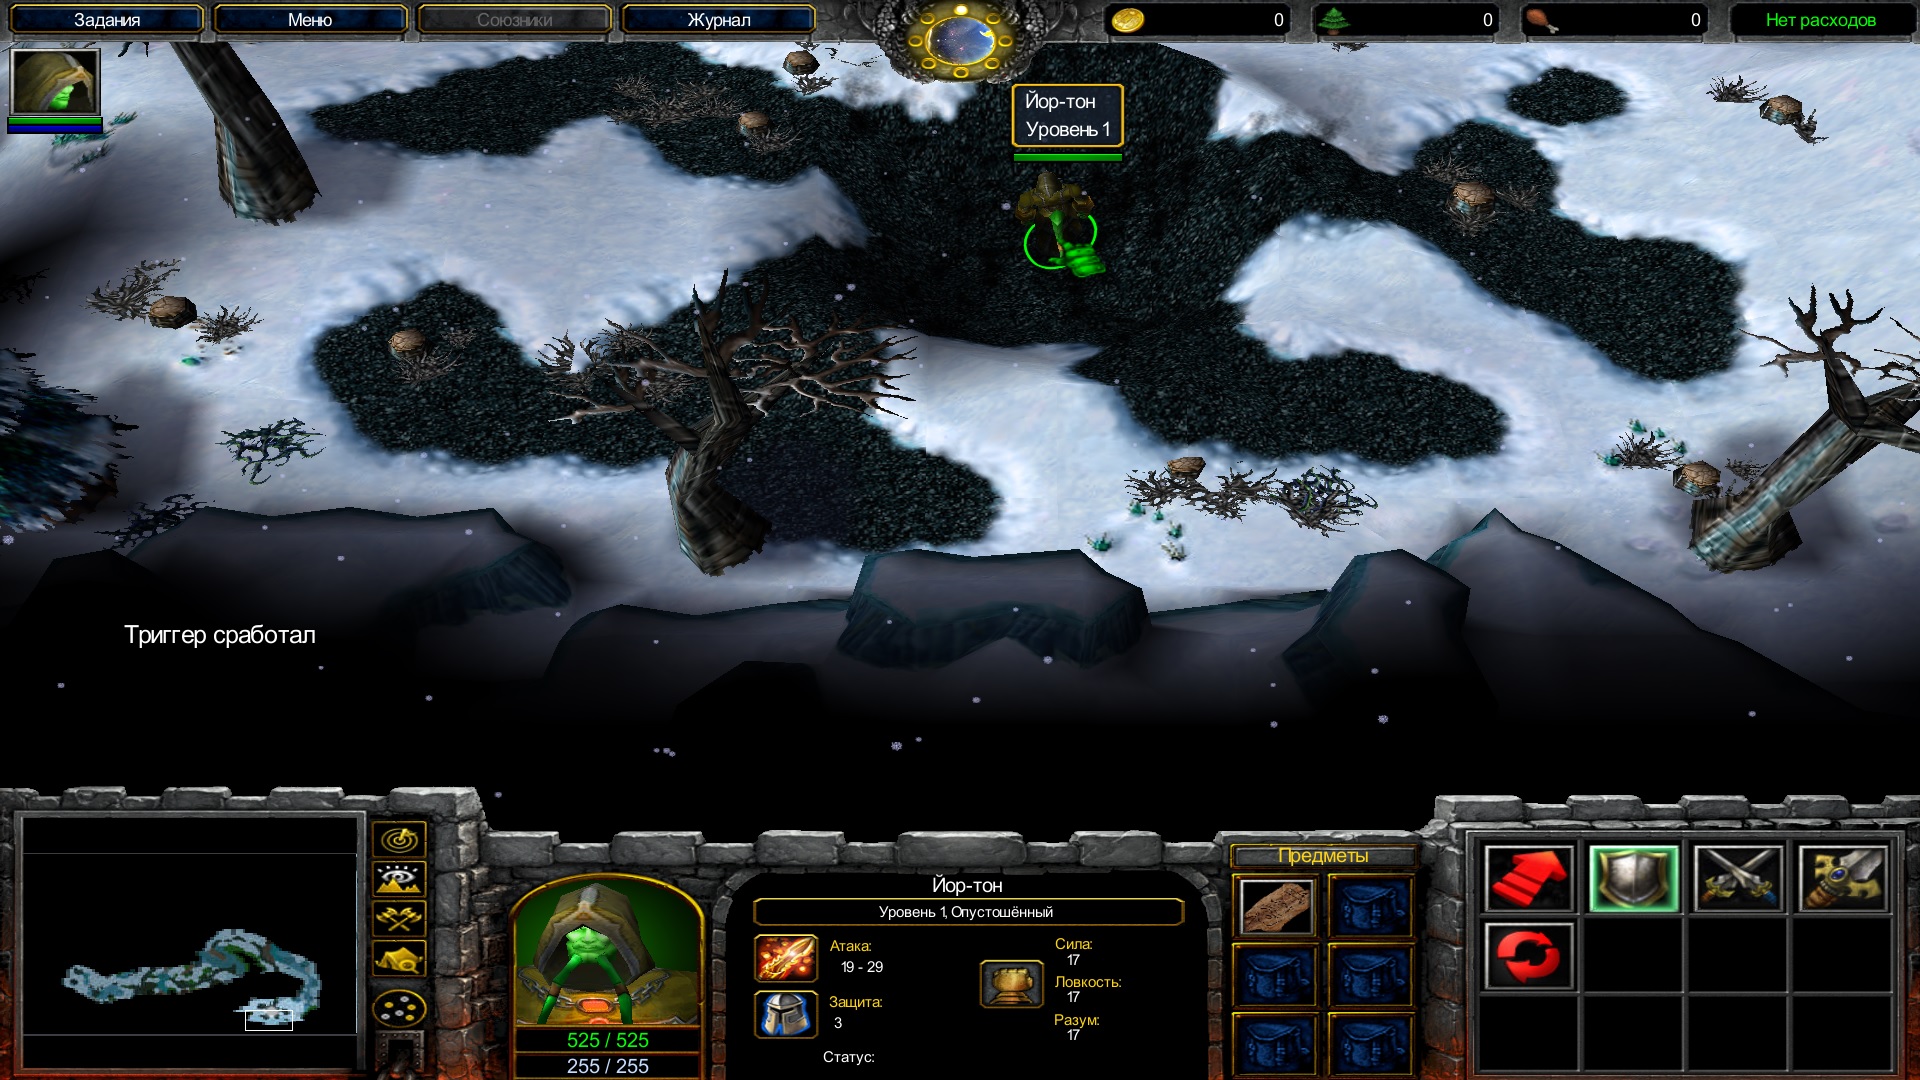 Юнит ворлд. Сферы варкрафт 3. Капитан Warcraft 3 Unit. Кастомная карта варкрафт 3 World юниты становятся героями на 8 игроков. Варкрафт 3 триггеры спавн юнита.